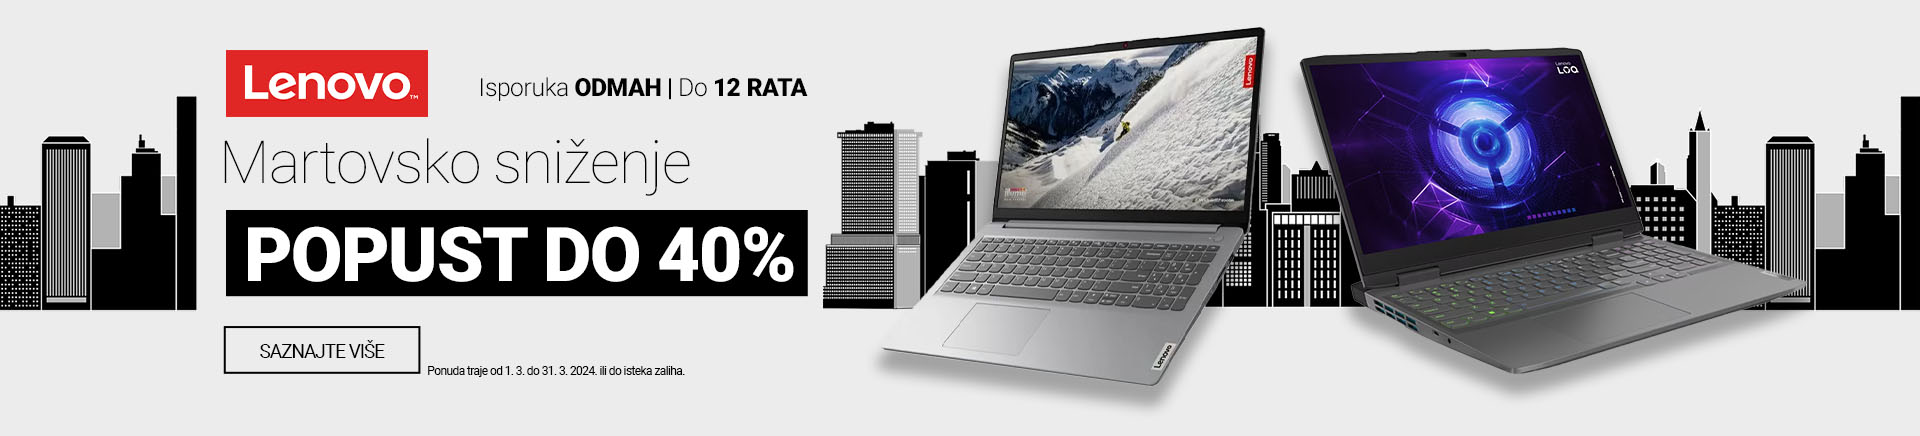 CG~Lenovo laptopi 40 posto popusta MOBILE 380 X 436.jpg